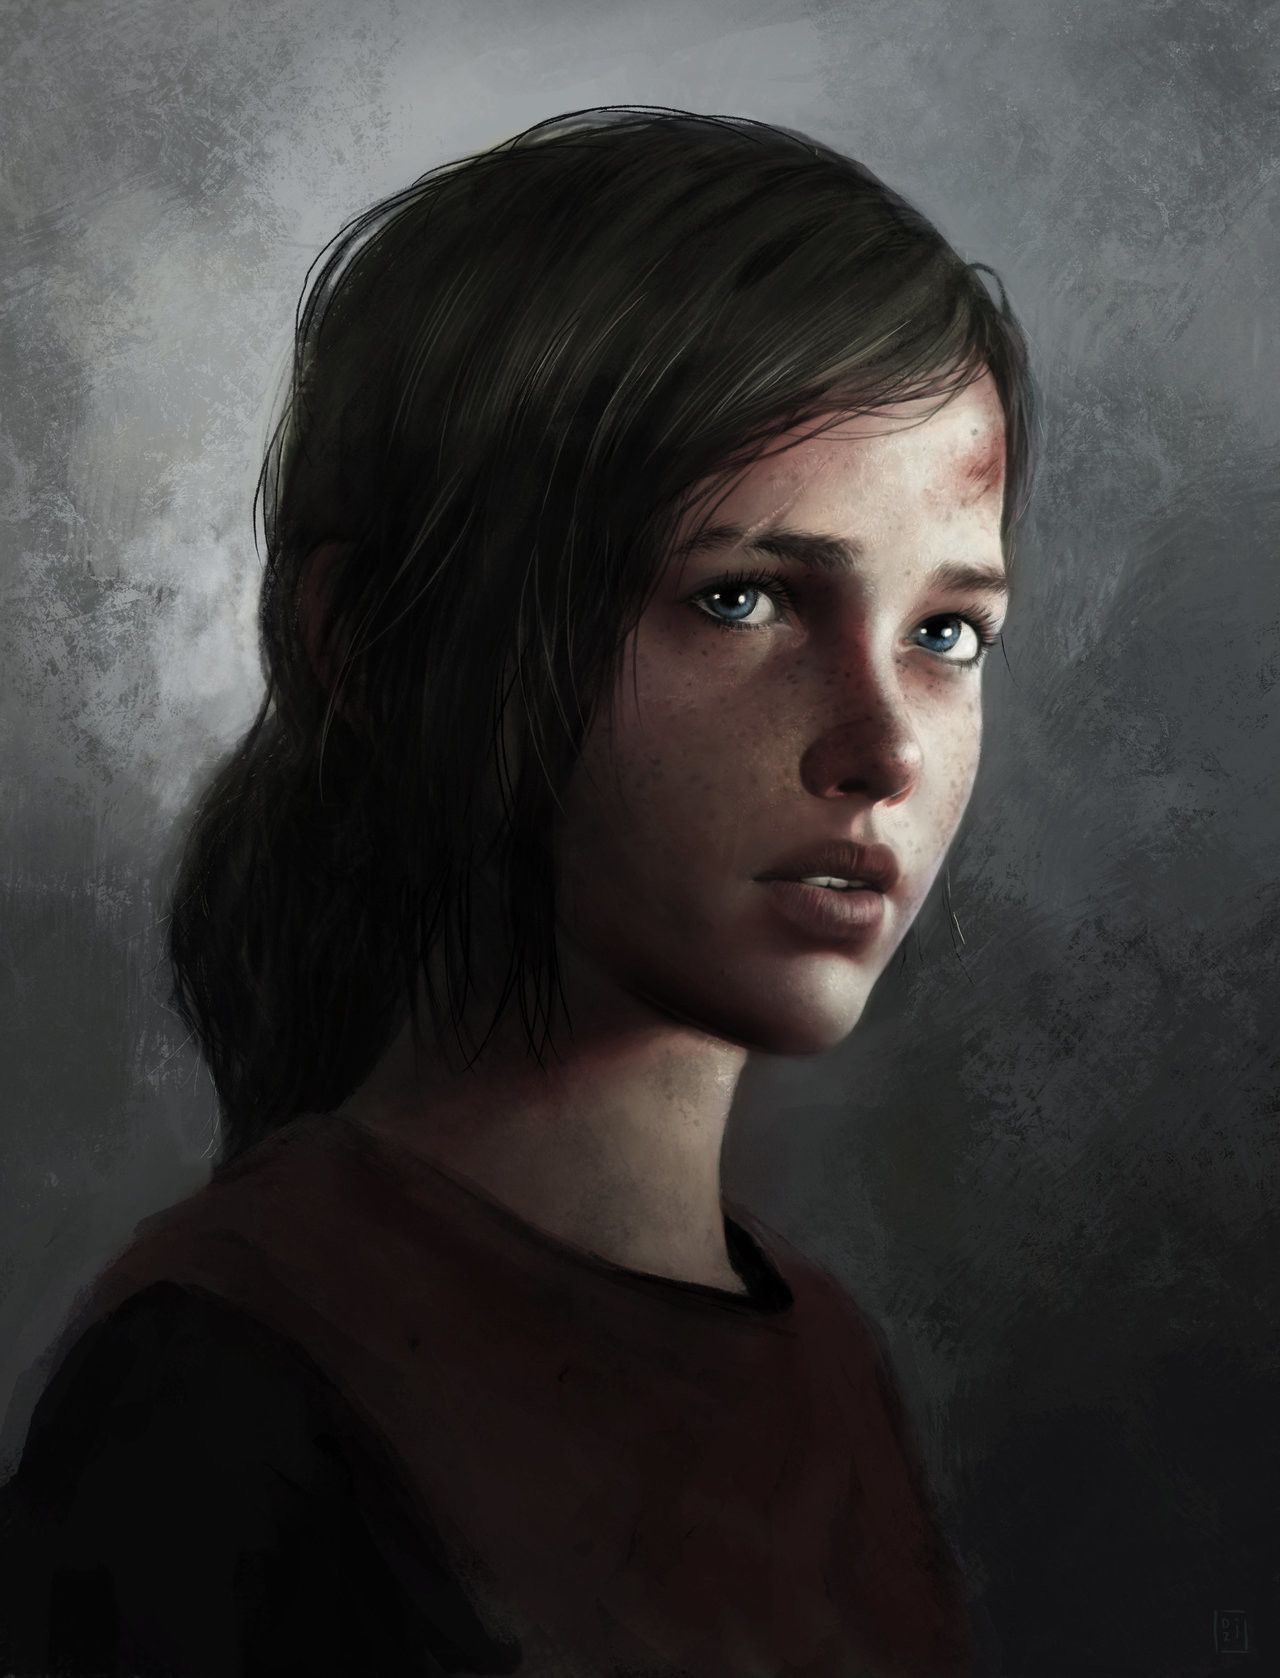 Ellie Williams from The Last of Us, Dzikawa ❤